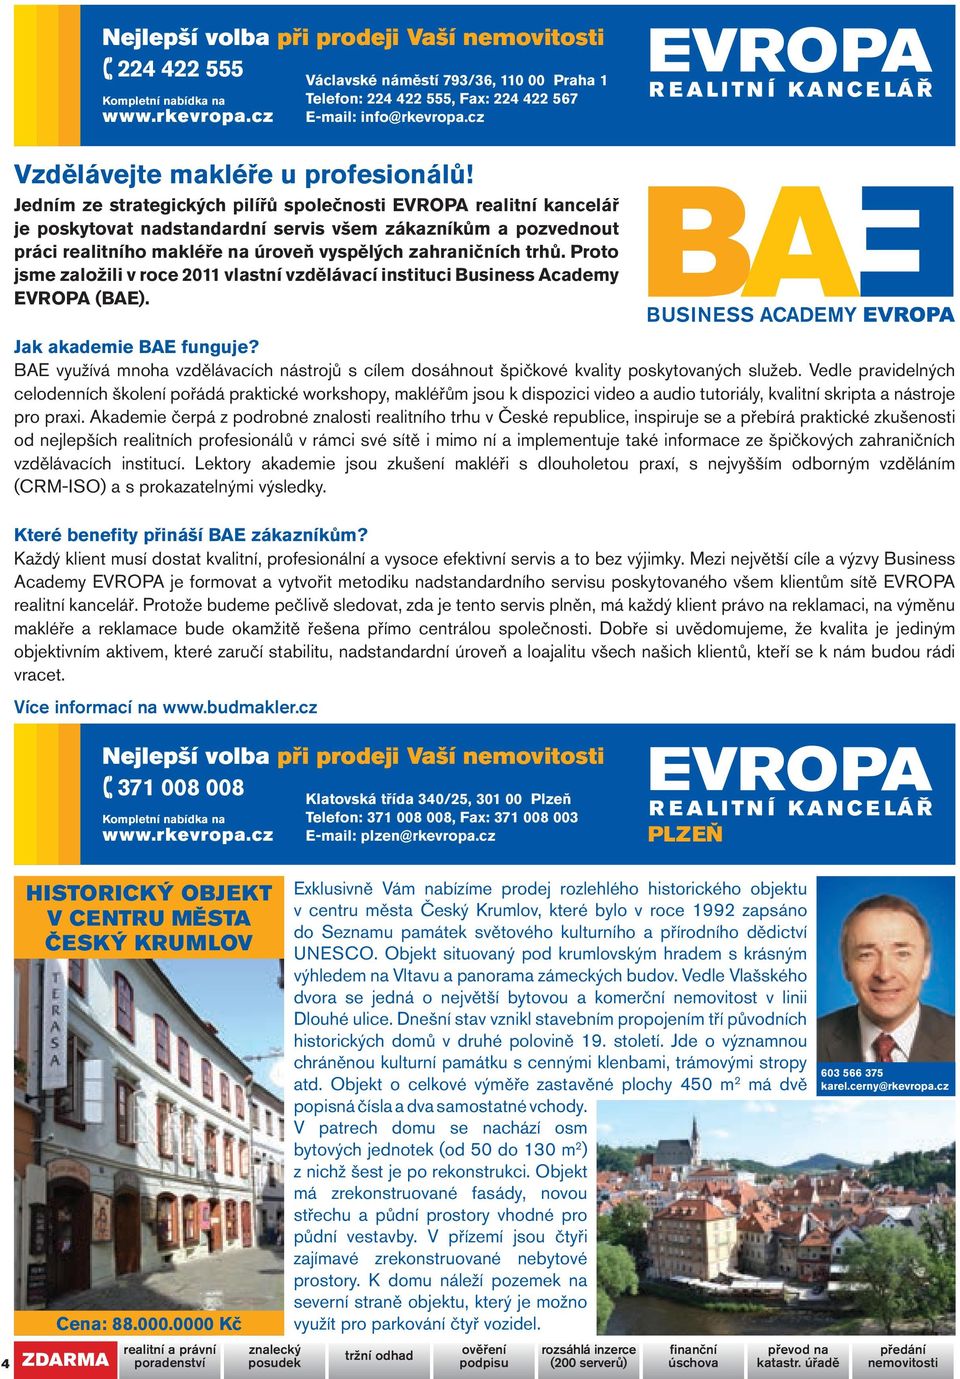 Proto jsme založili v roce 2011 vlastní vzdělávací instituci Business Academy EVROPA (BAE). Jak akademie BAE funguje?